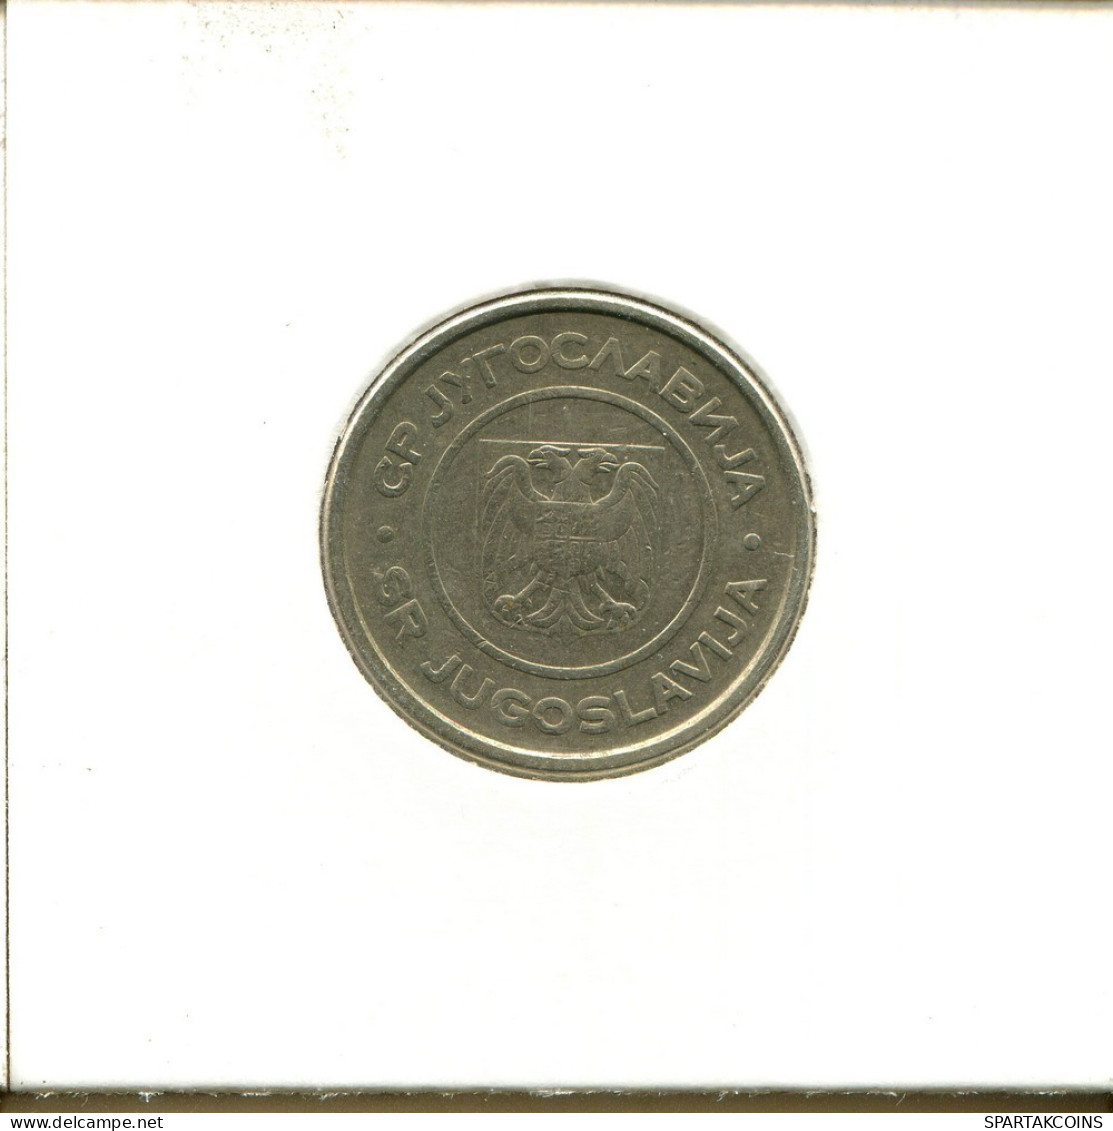 2 DINARA 2002 YUGOSLAVIA Coin #AS618.U.A - Joegoslavië